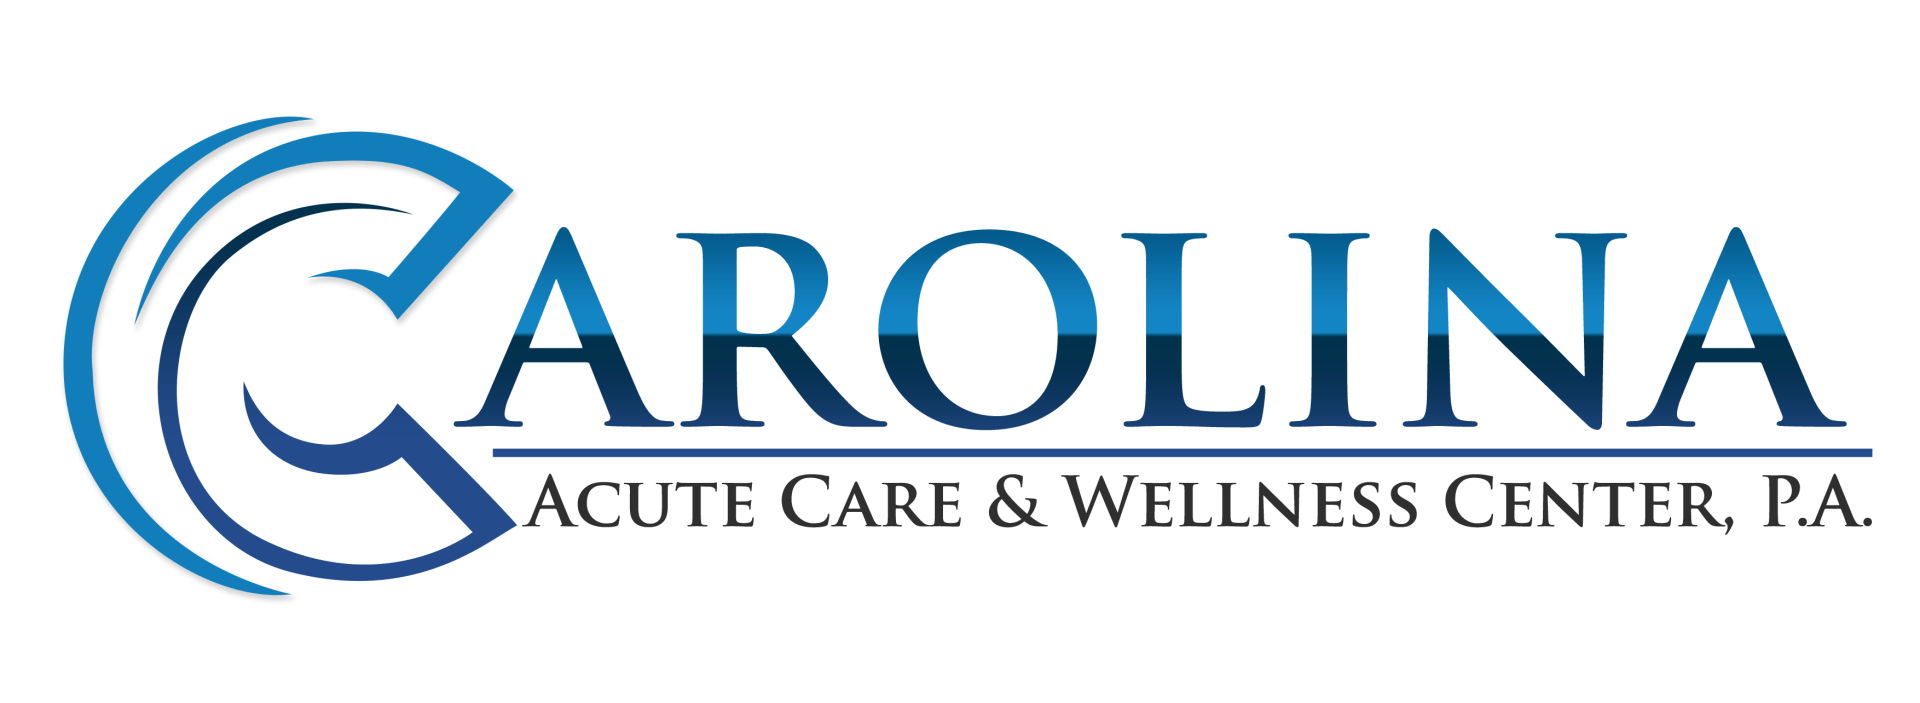 carolina anti aging és wellness központ